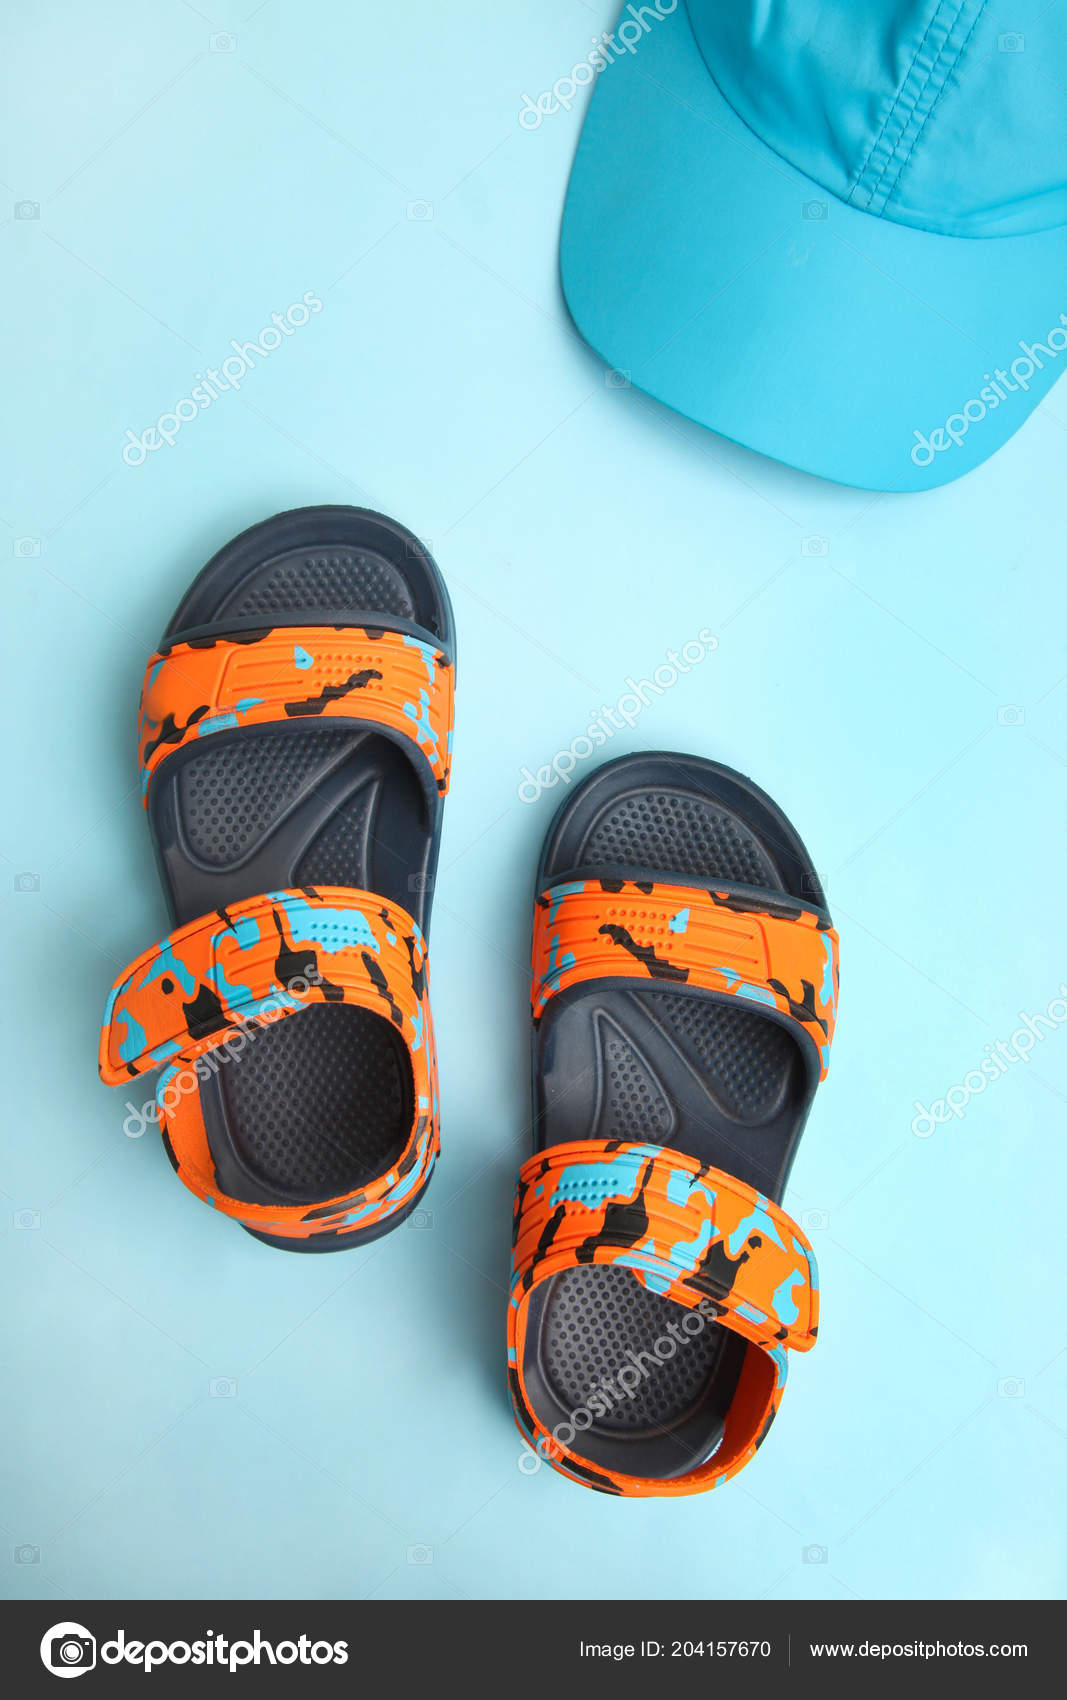 children's summer sandals